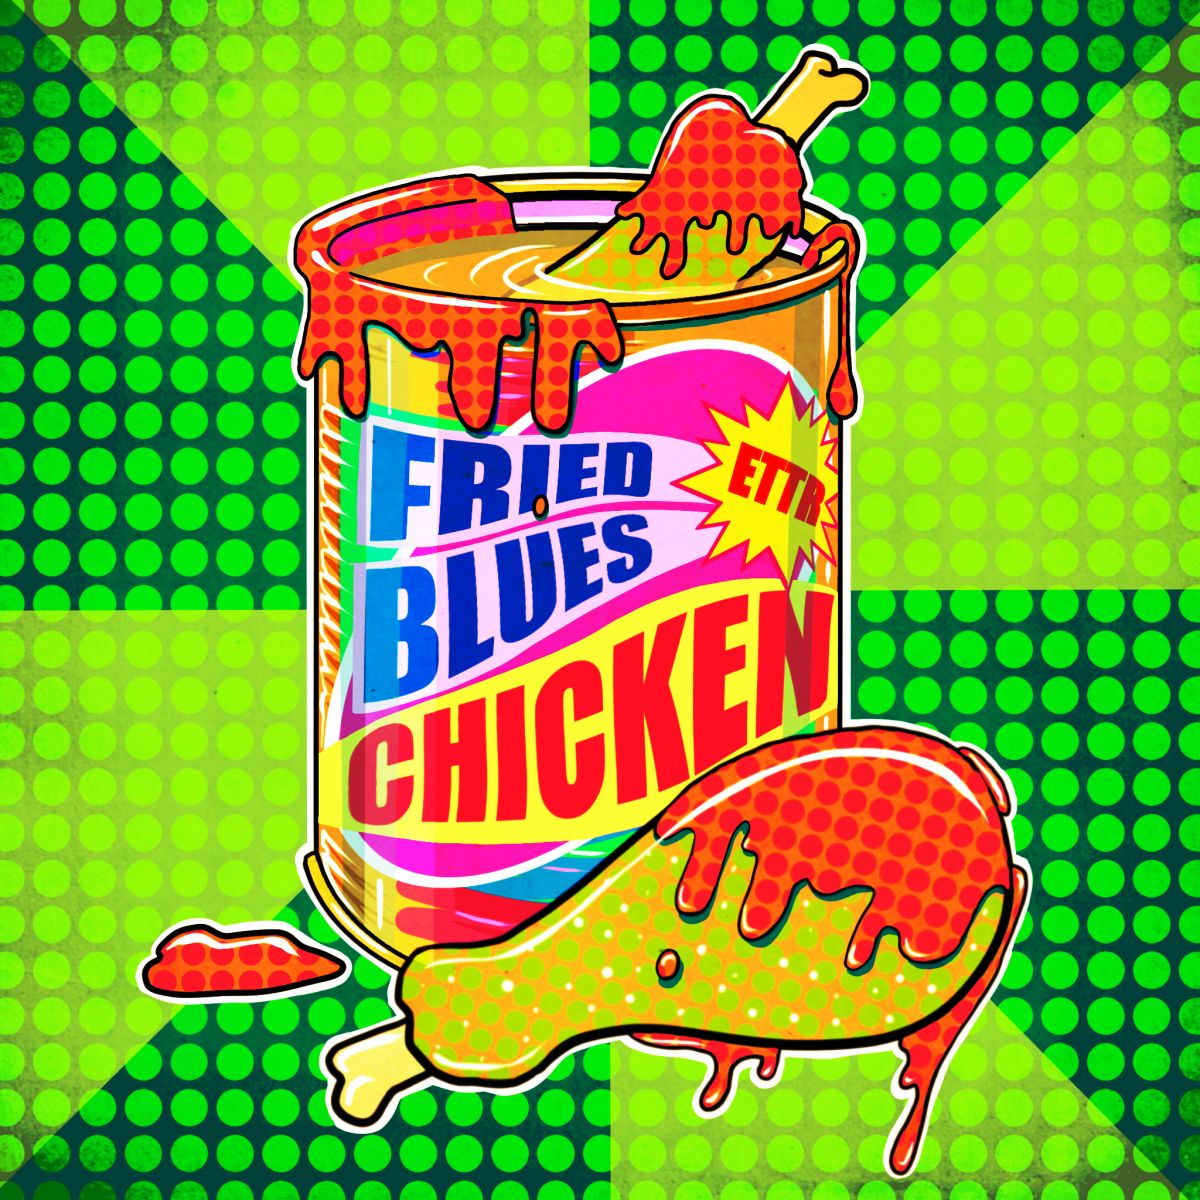 Fuori “Fried Blues Chicken”, primo singolo della band Escape to the Roof